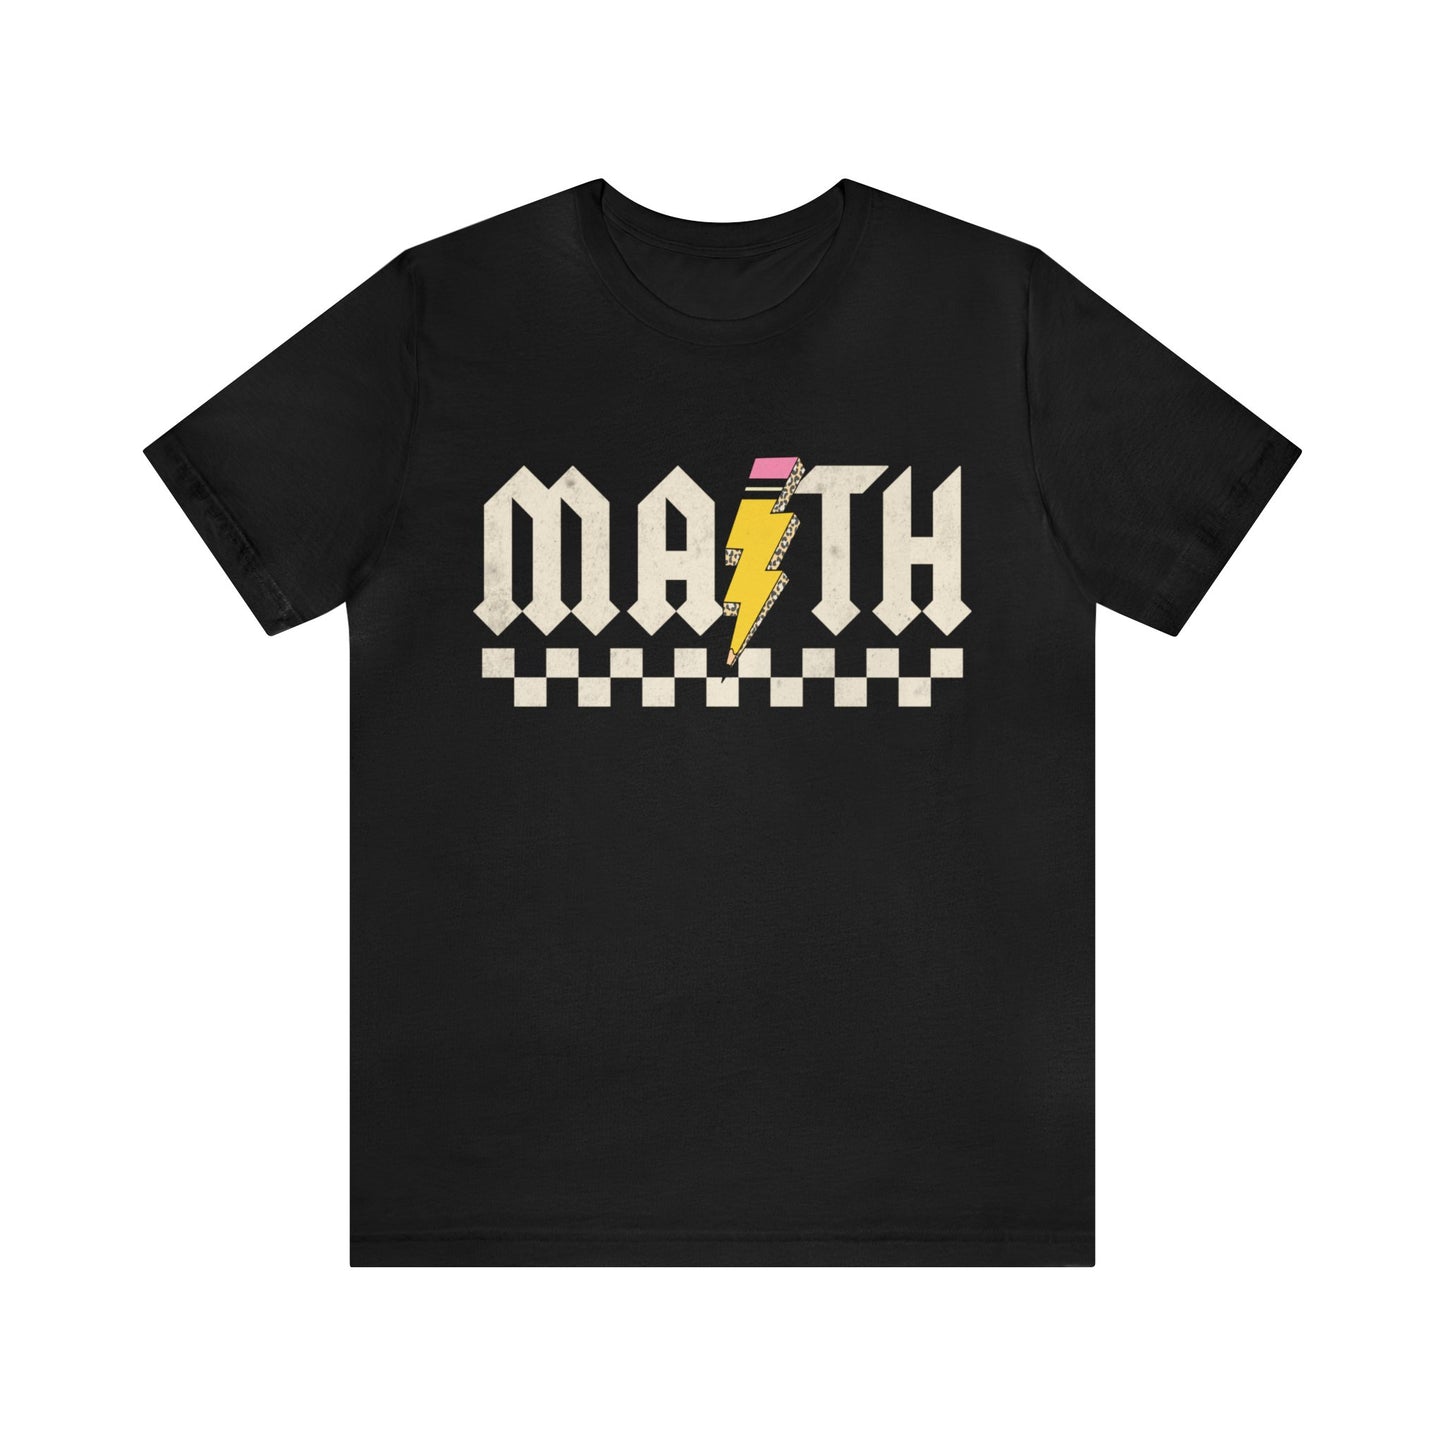 Retro Math Teacher Shirt, High School Math Teacher Tshirt, Back To School Teacher Appreciation Gift for Math Teacher Tee gift, T1220